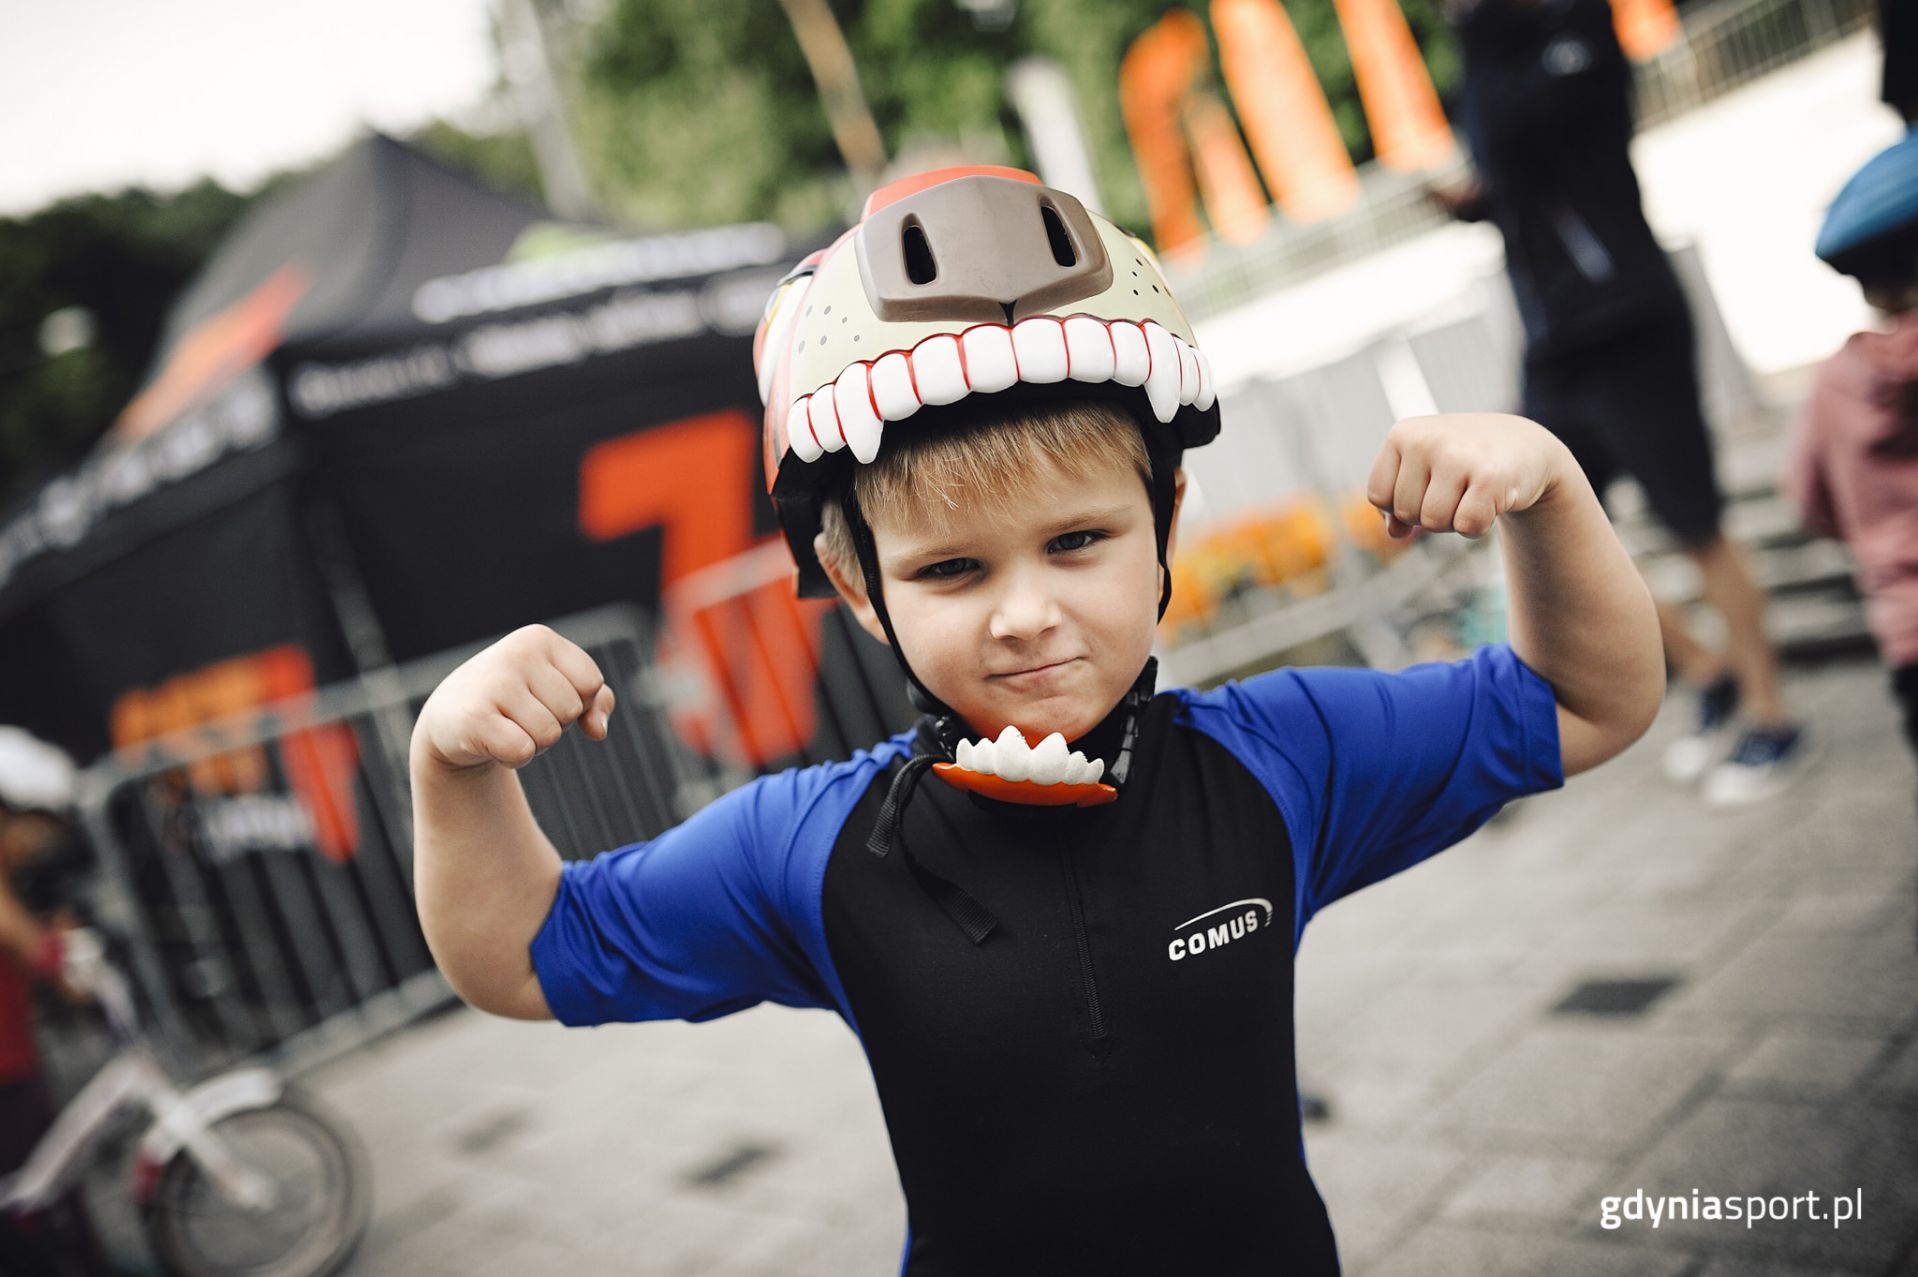 Header podstrony "O nas" - mały chłopiec w kasku rowerowym podnoszący ręce pokazujący siłę 